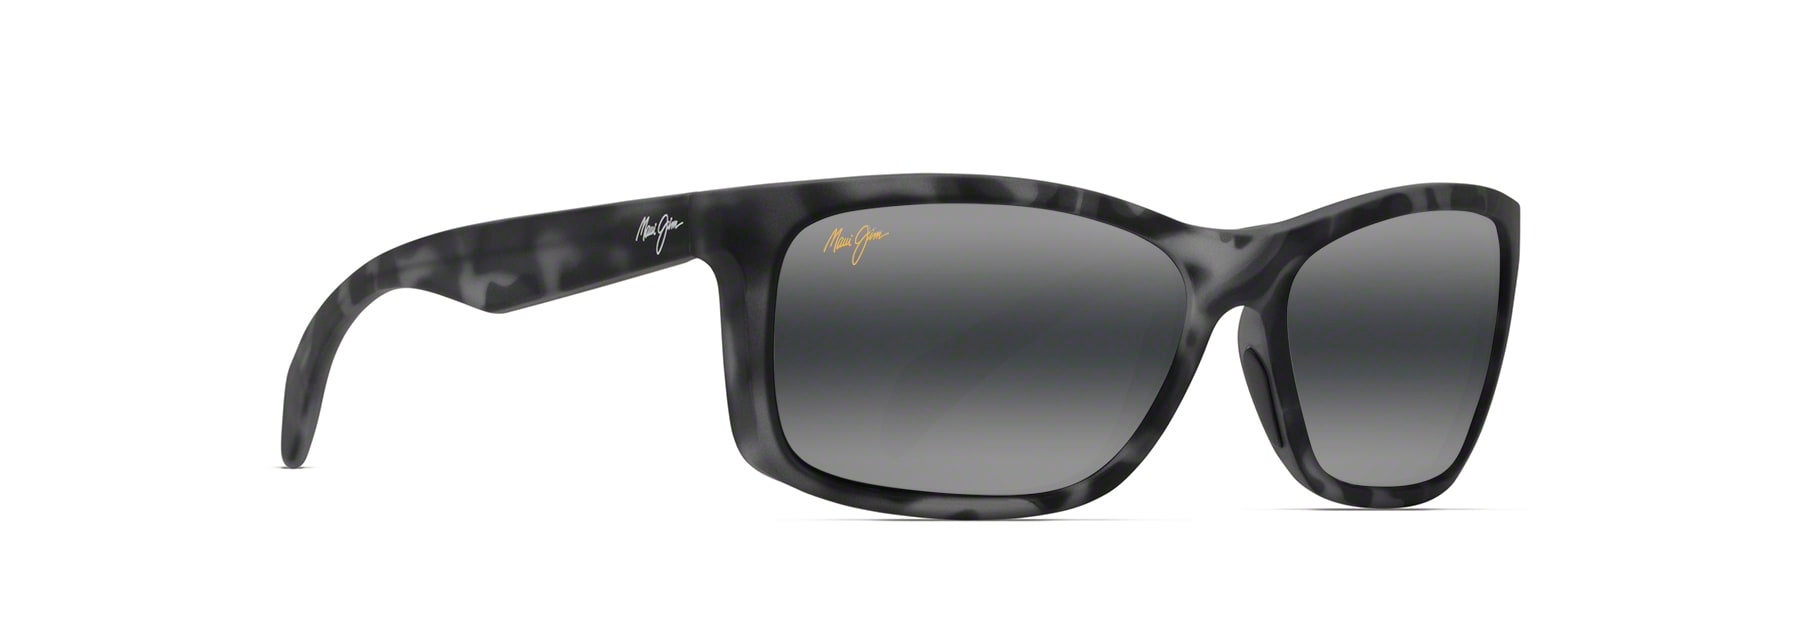 Puhi Polarized Sunglasses | Maui Jim®